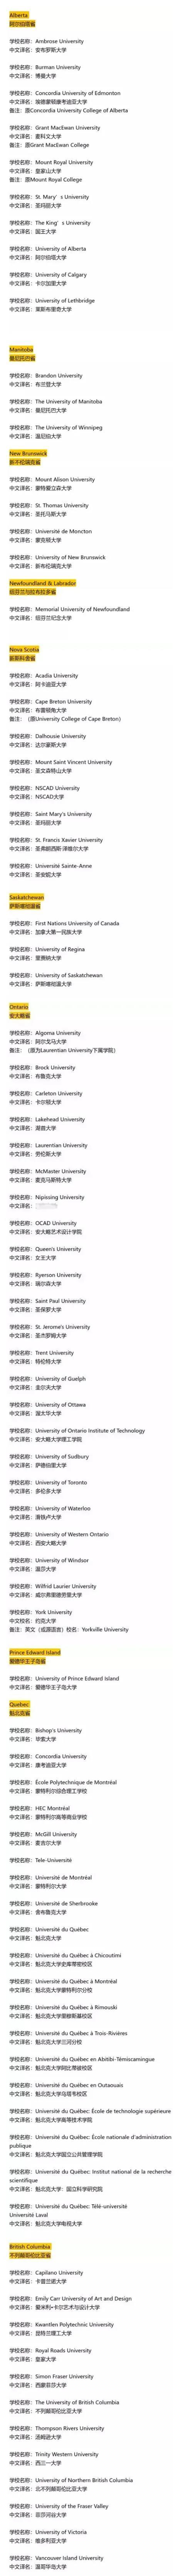 中国教育部认可的加拿大大学 (University) 名单